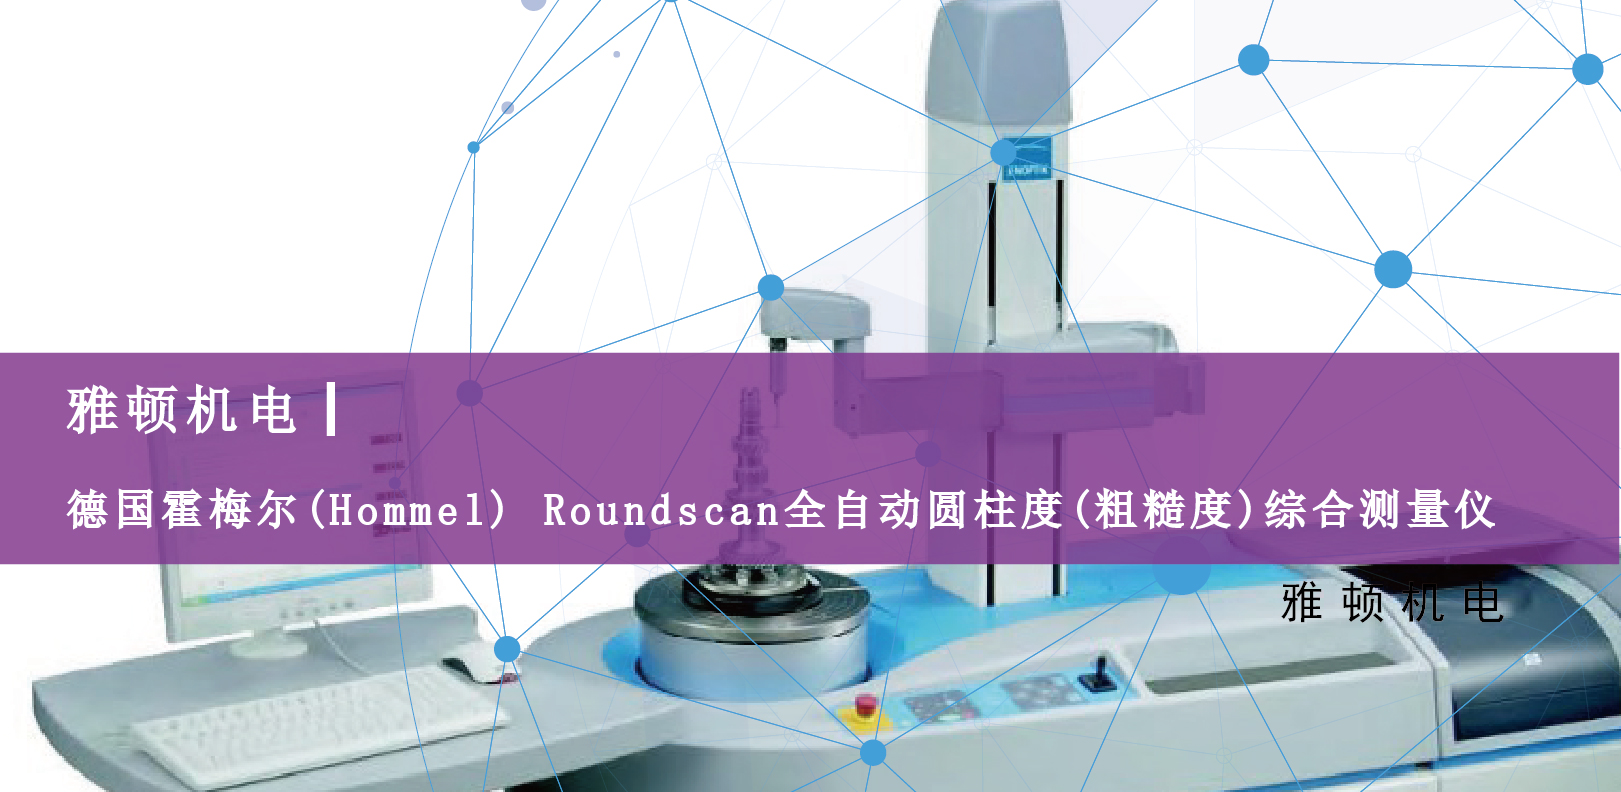 雅顿机电-德国霍梅尔(Hommel) Roundscan全自动圆柱度(粗糙度)综合测量仪